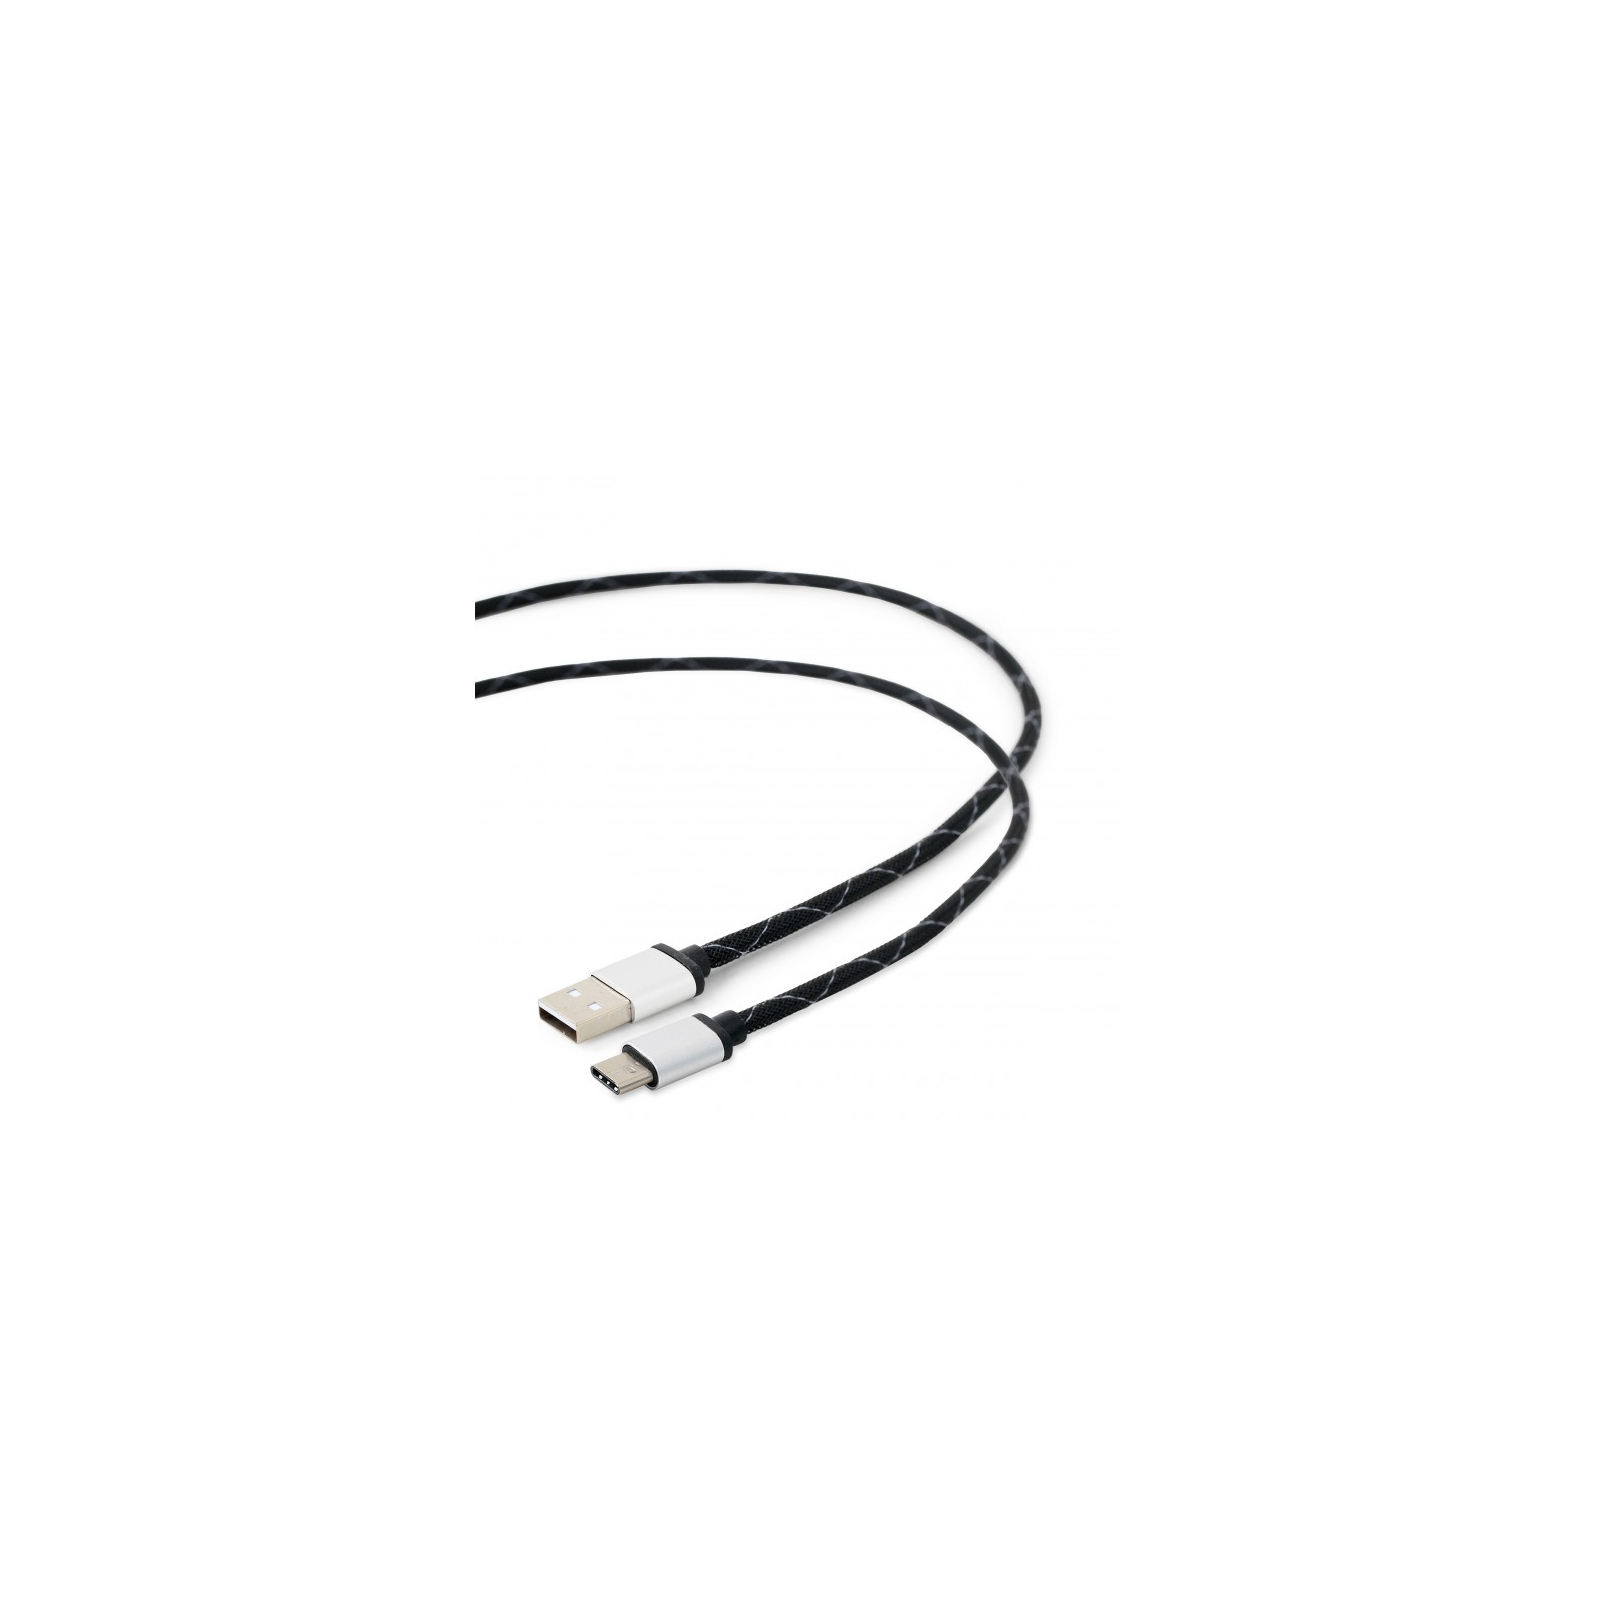 Дата кабель USB 2.0 AM to Type-C 2.5m Cablexpert (CCP-USB2-AMCM-2.5M) изображение 3